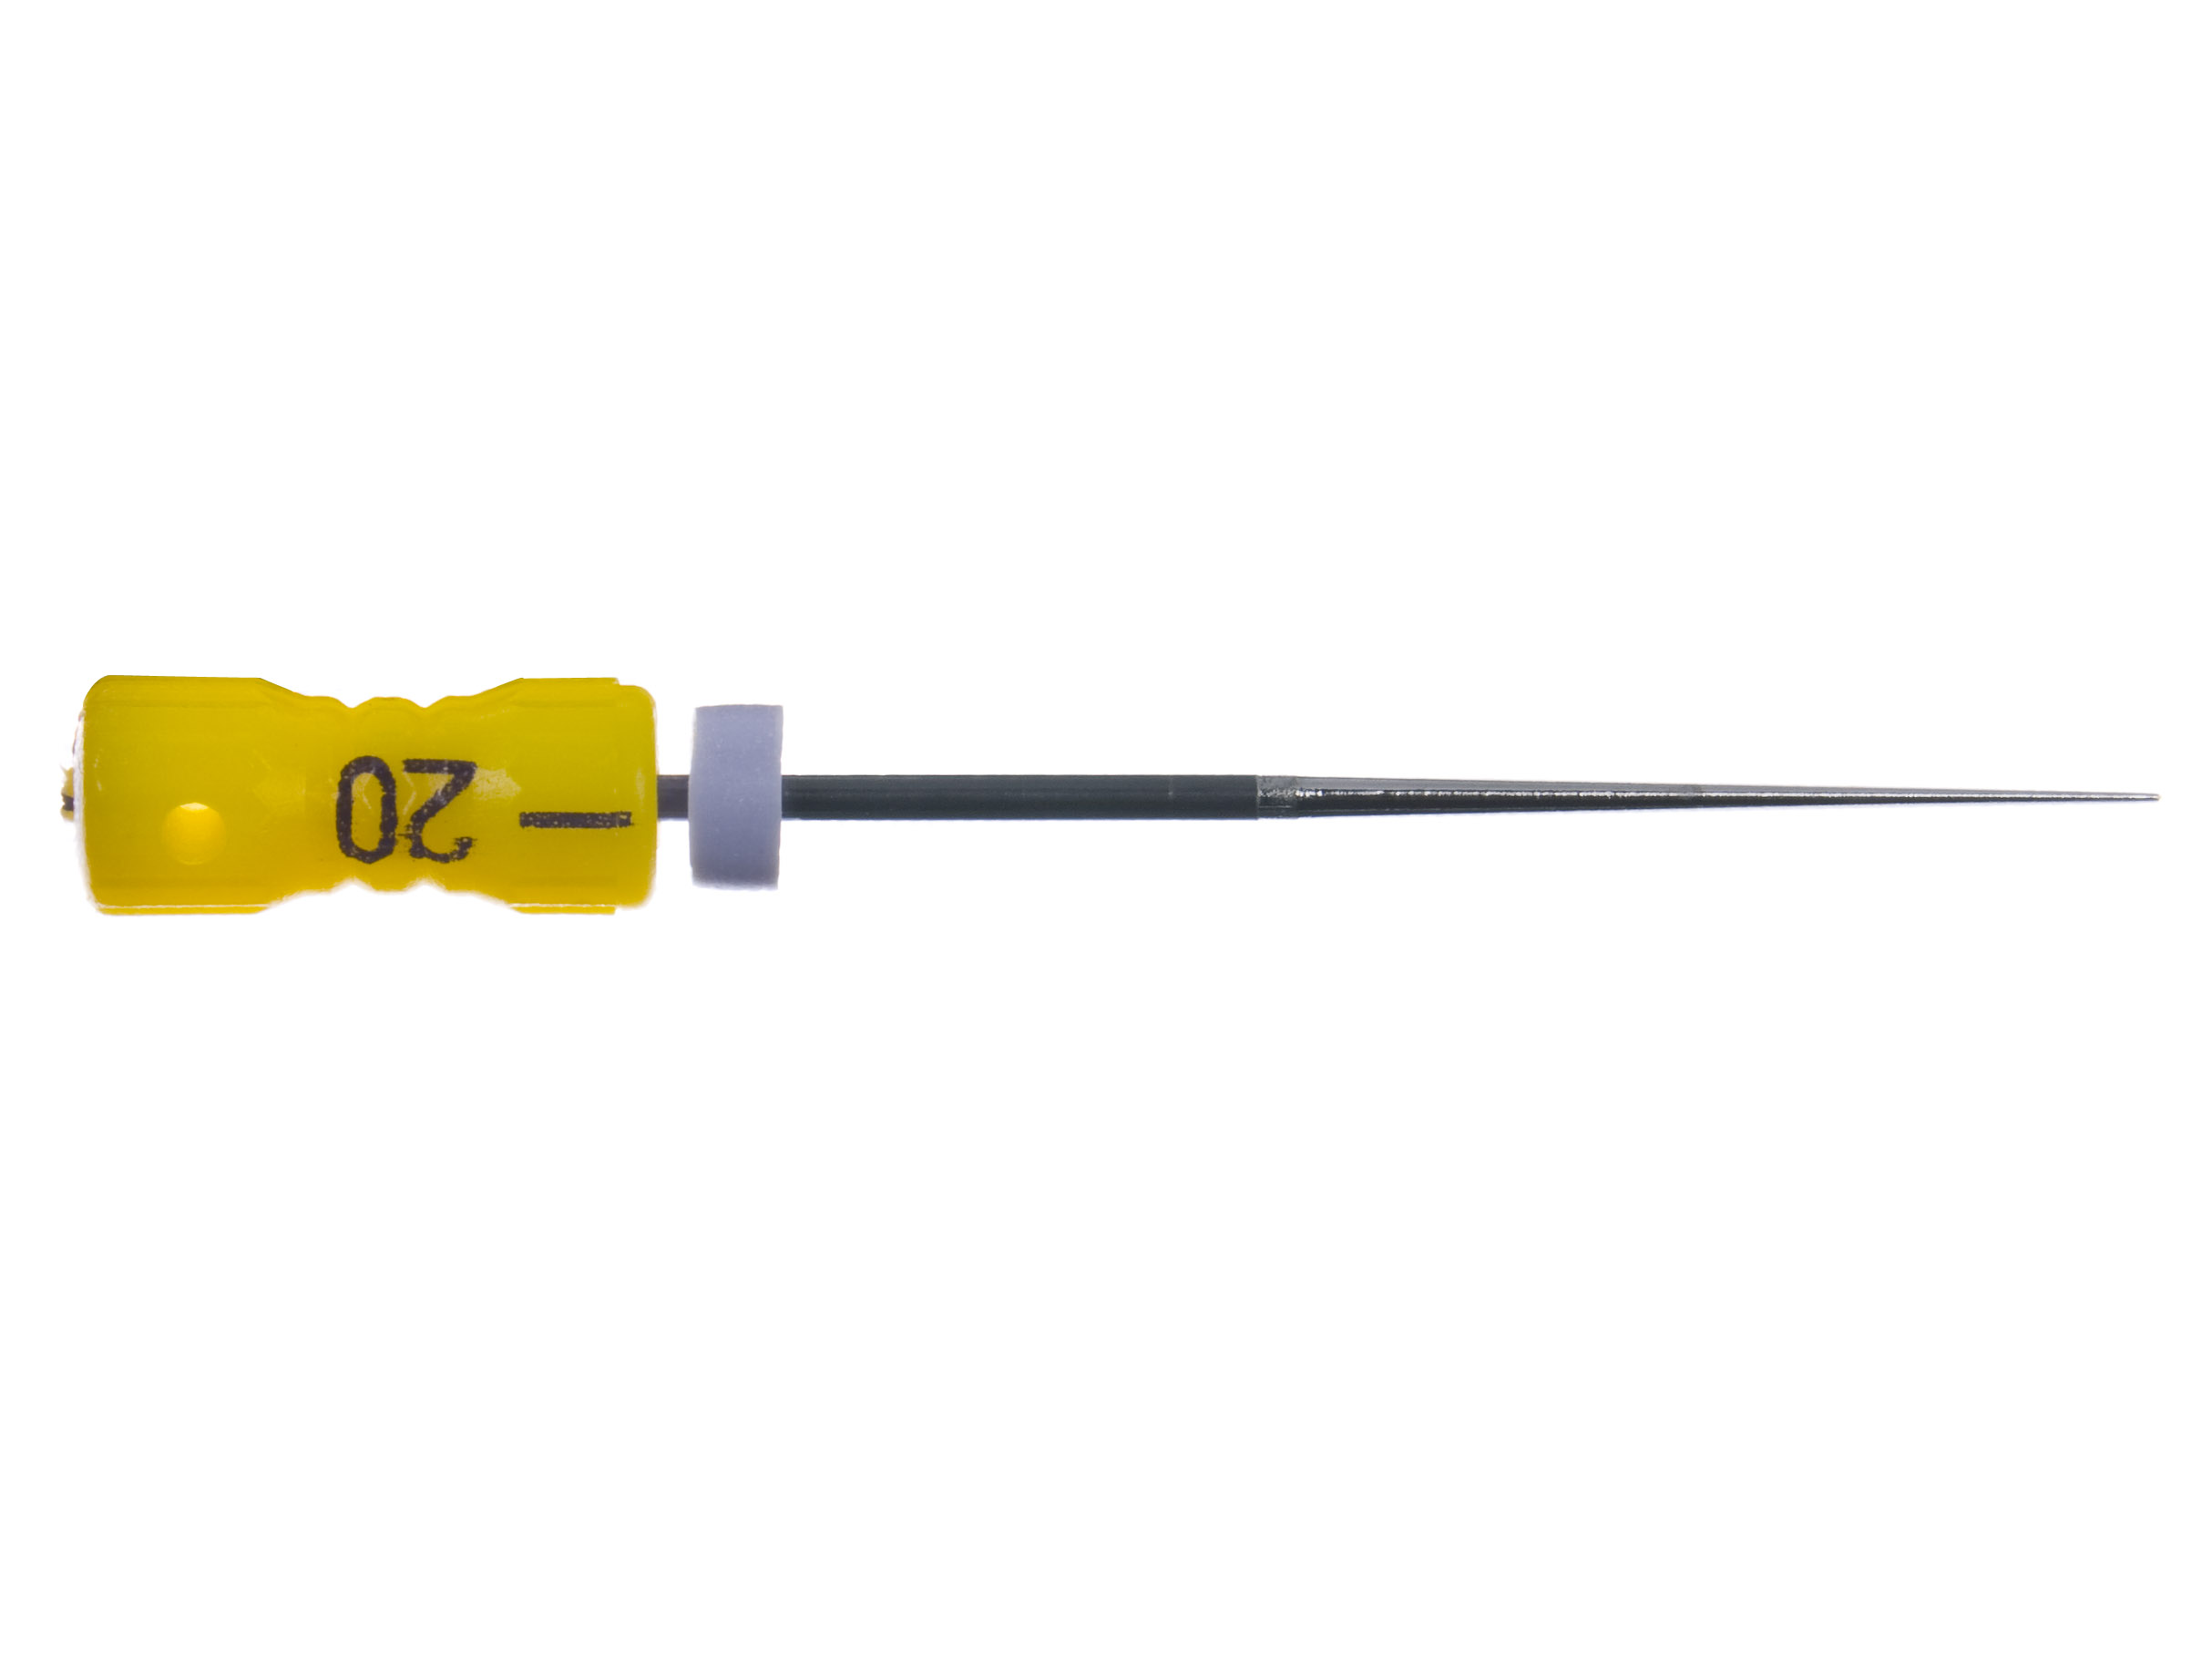 Revo Spreader n20 L21 4% NiTi handle 09 - инструменты эндодонтические